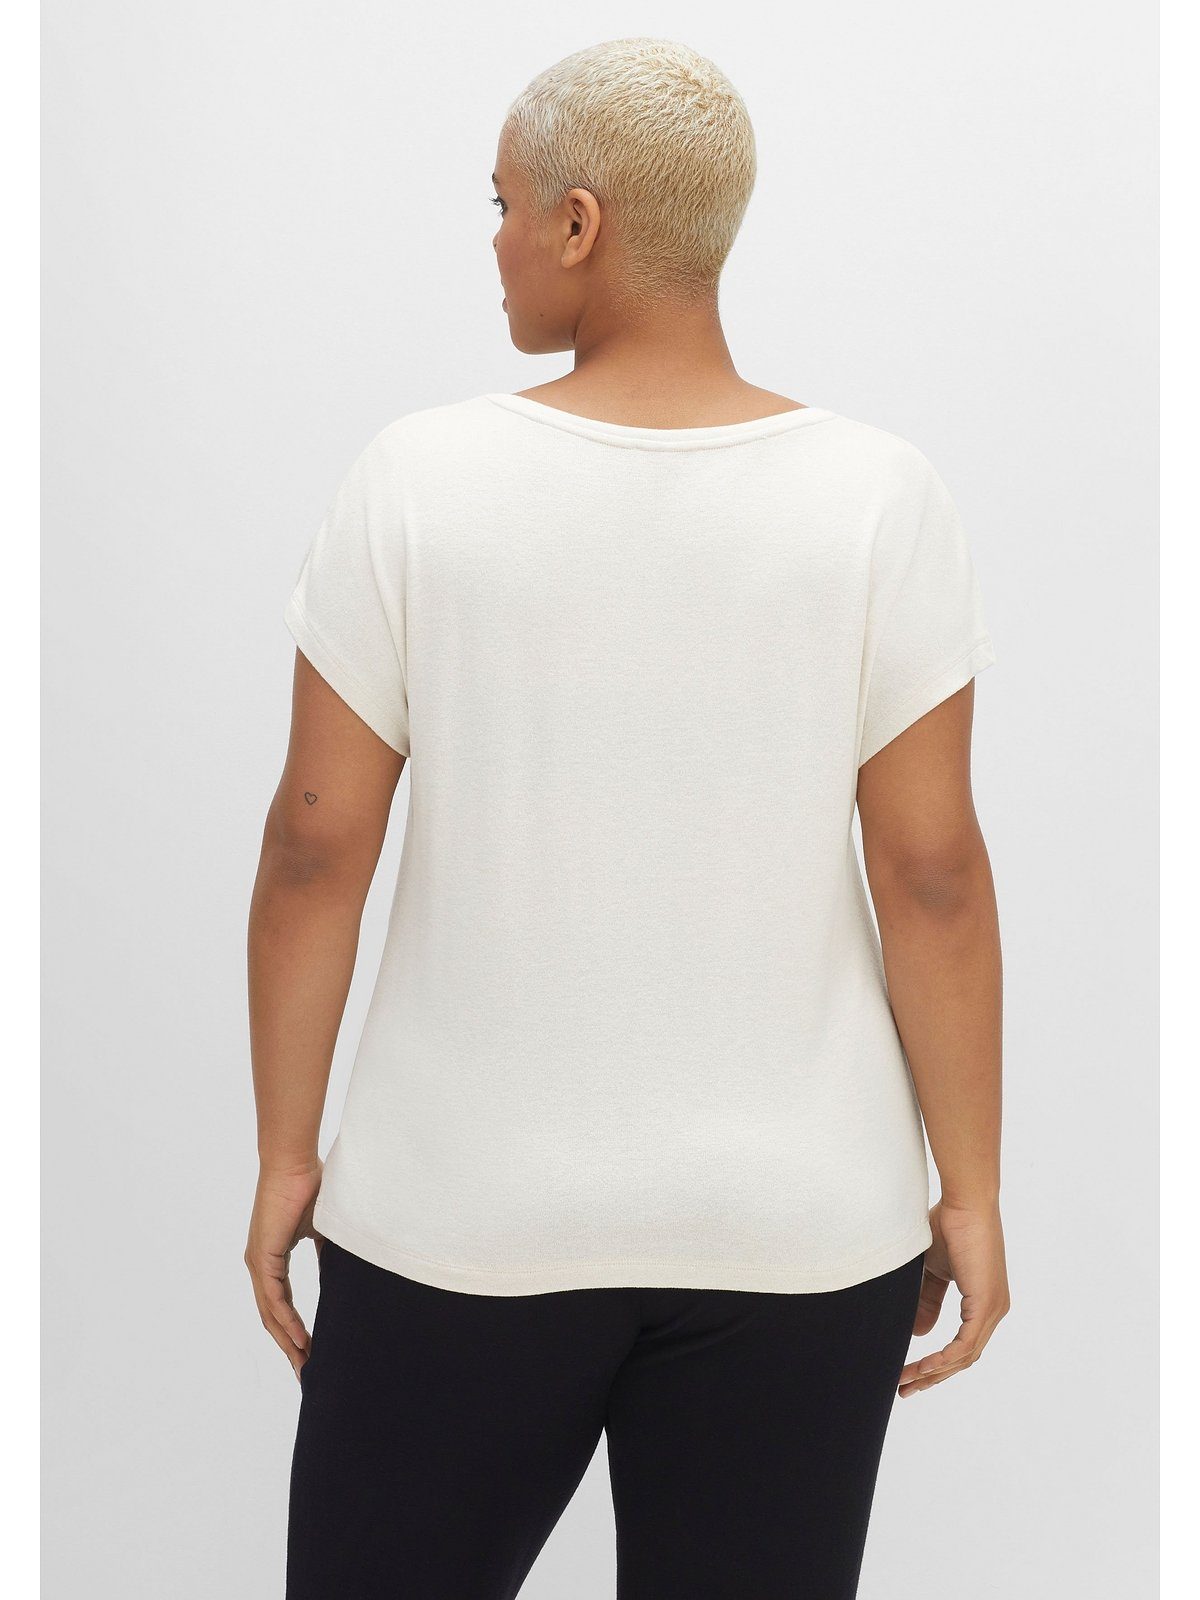 sheego by Joe Browns T-Shirt Große Größen mit Soft-Touch in Feinstrick-Optik | T-Shirts